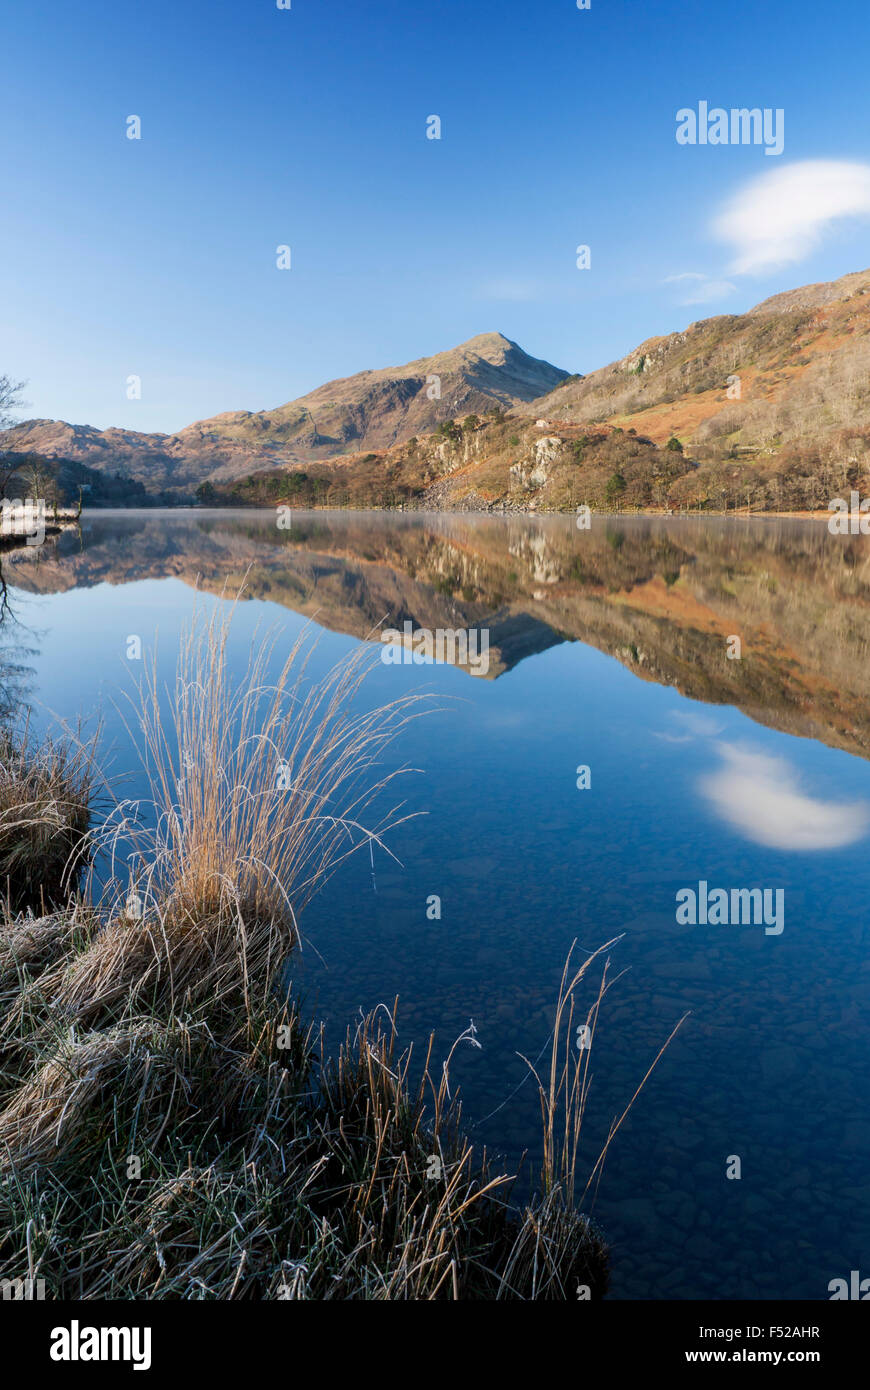 Llyn Gwynant lake with Yr Aran mountain reflected in still water Nantgwynant Snowdonia National Park Gwynedd North Wales UK Stock Photo